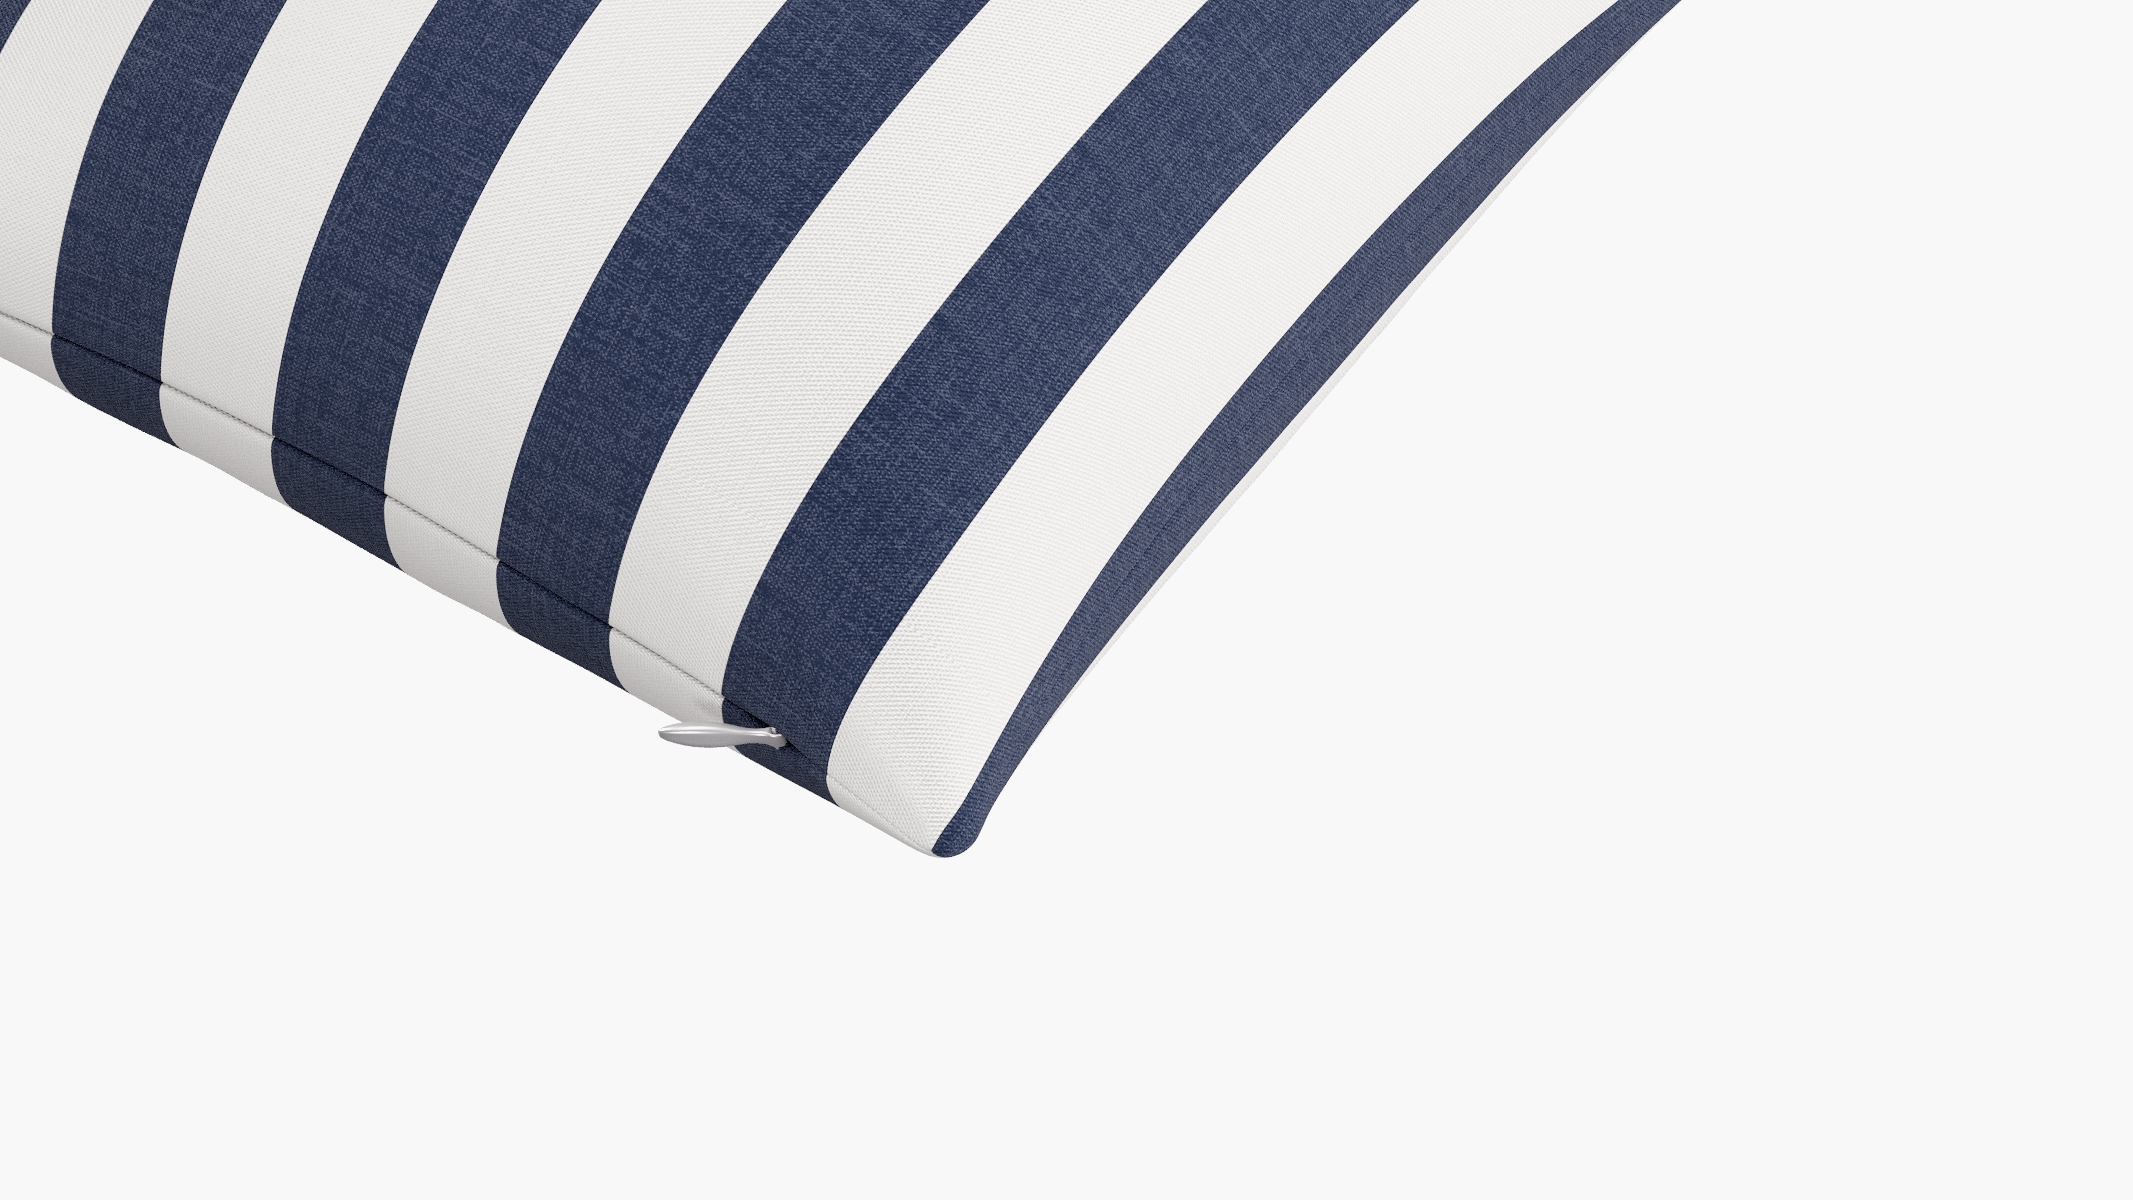 Throw Pillow 16", Navy Cabana Stripe, 16" x 16" - Image 1